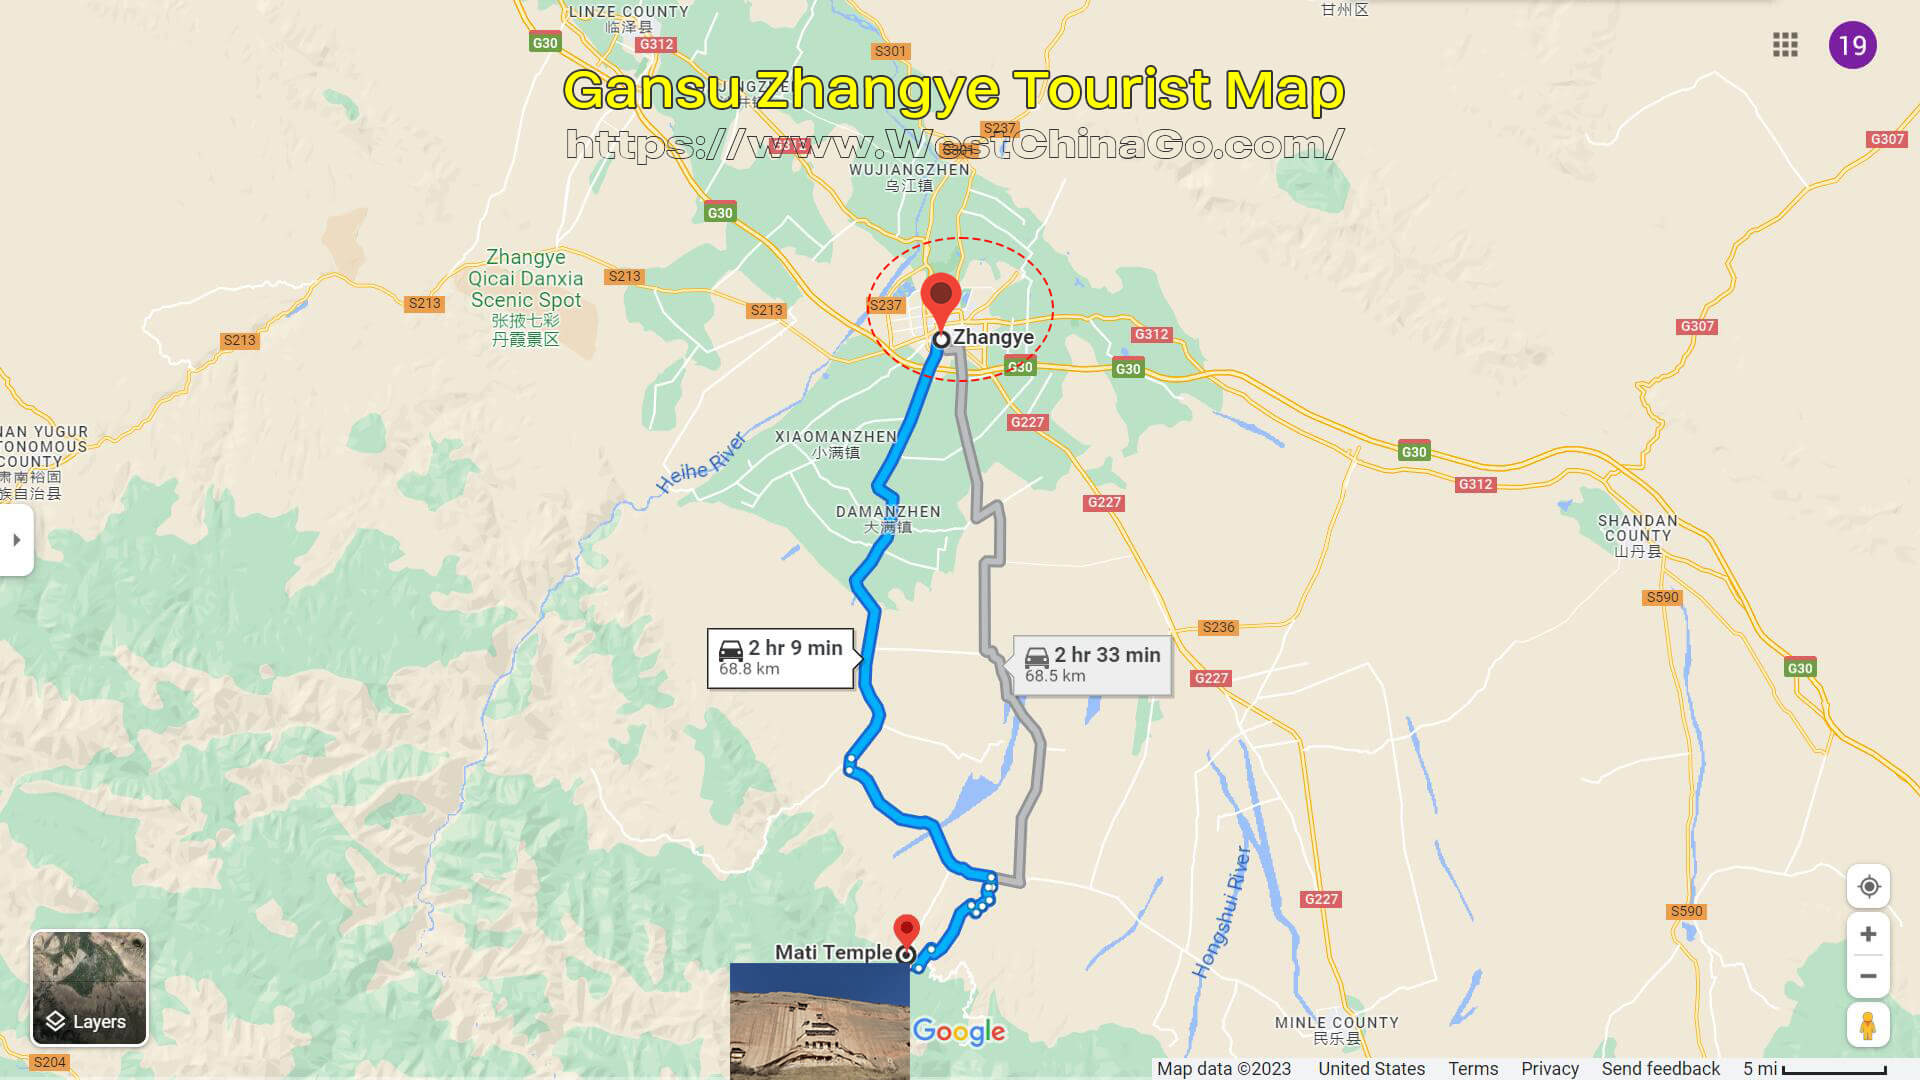 ZhangYe Mati Temple Tourist Map